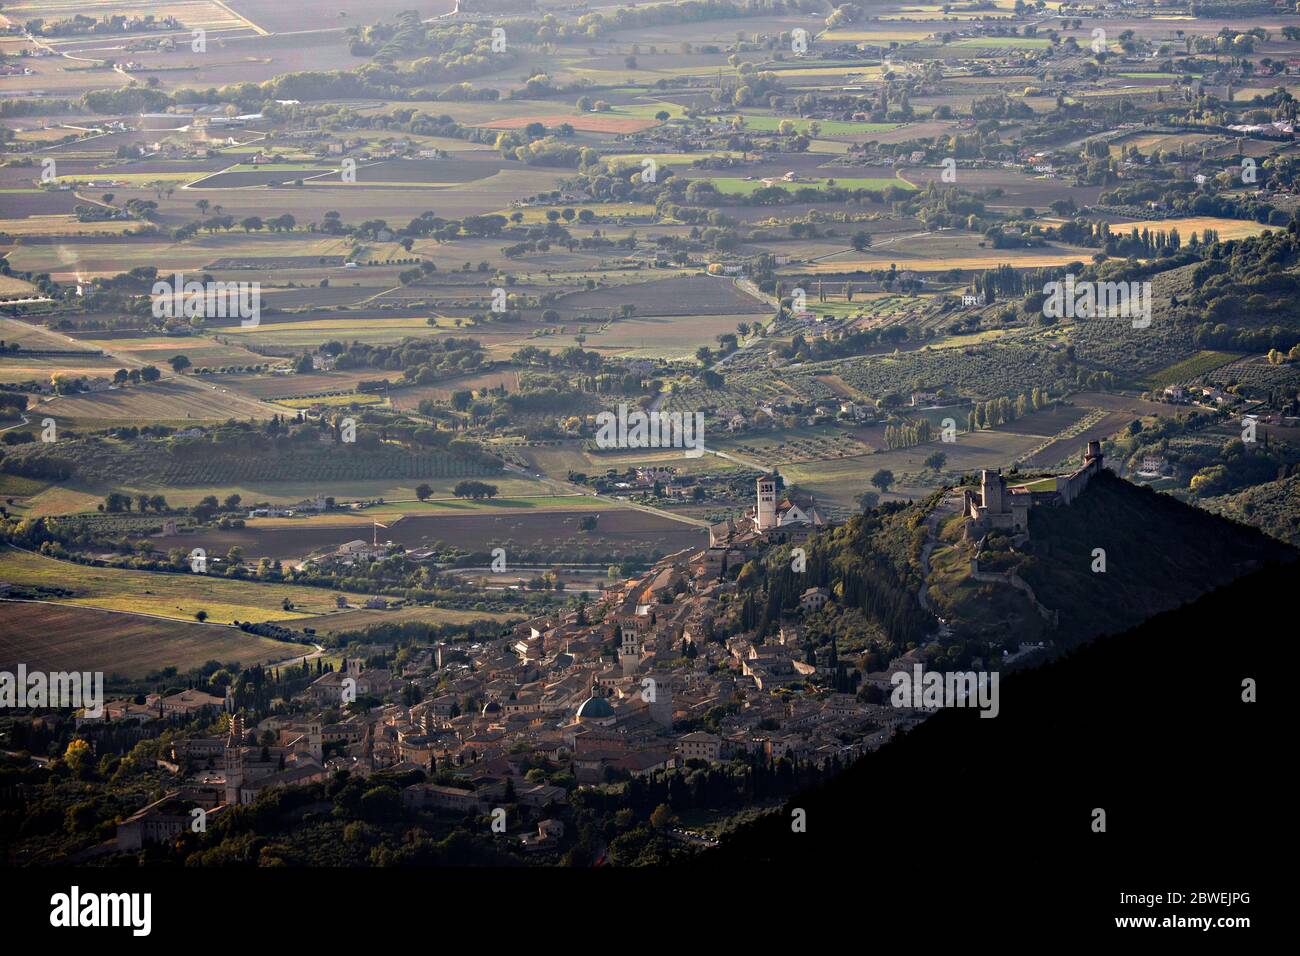 Assisi vista dall'alto, incorniciata dal Monte Subasio, che mostra tutta la pianura davanti ad essa Foto Stock